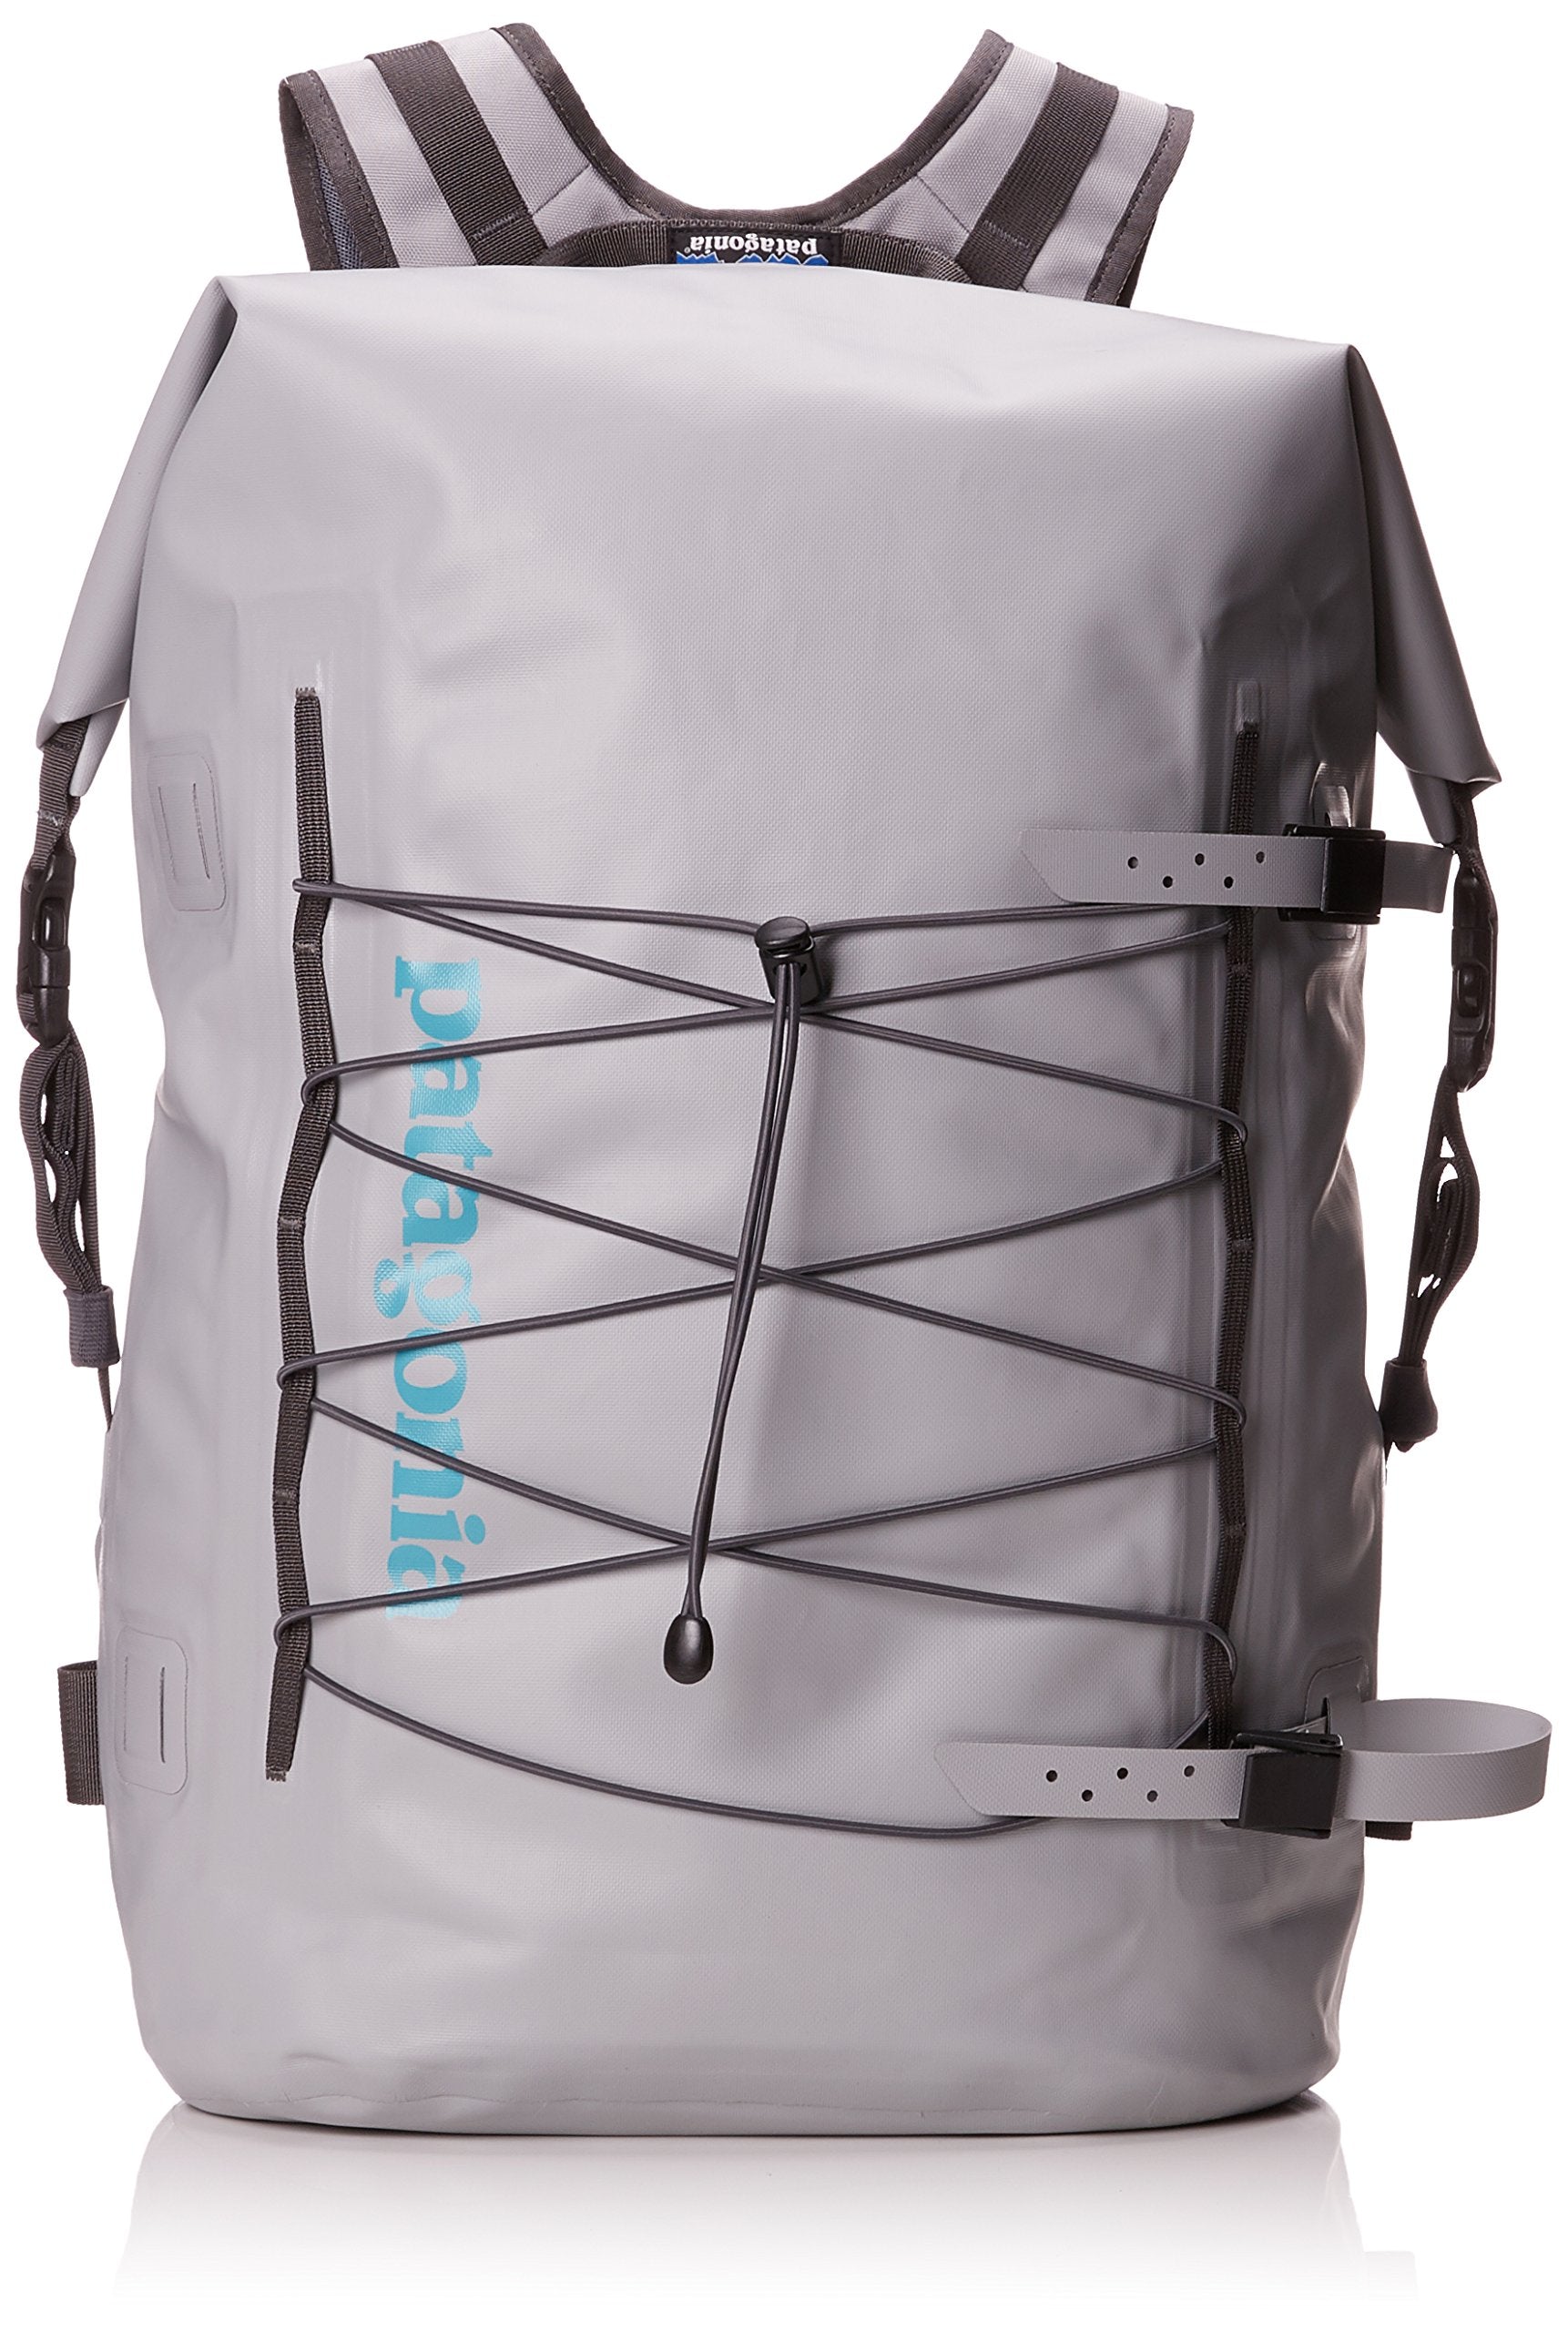 Gætte nøgle sammensmeltning Patagonia Stormfront Roll Top Pack, Unisex Adults' Backpack, Grey (Dri–  backpacks4less.com